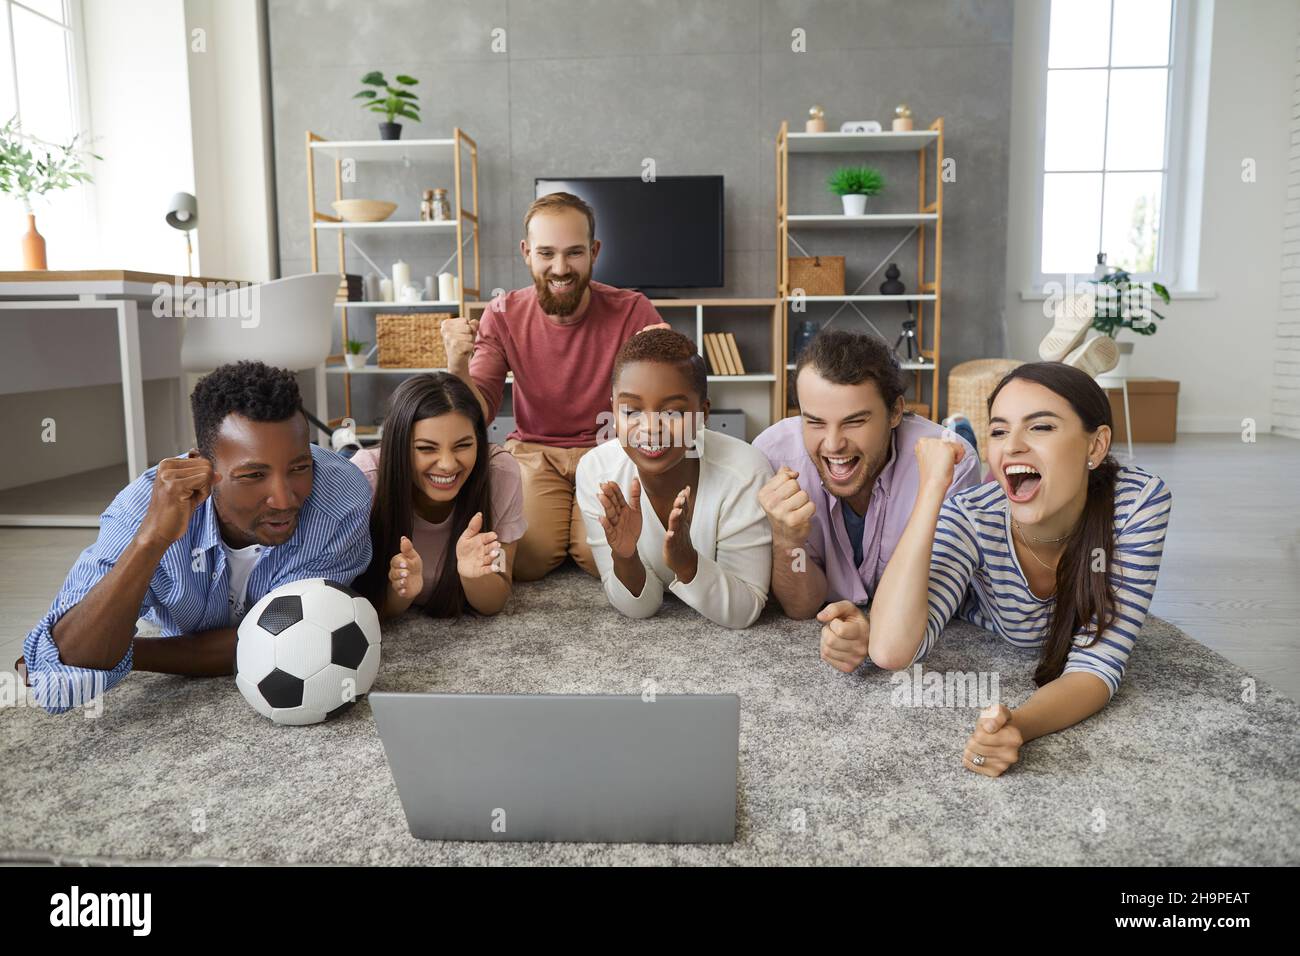 Des amis se trouvent sur le sol dans le salon, devant un ordinateur portable qui diffuse un match de football. Banque D'Images